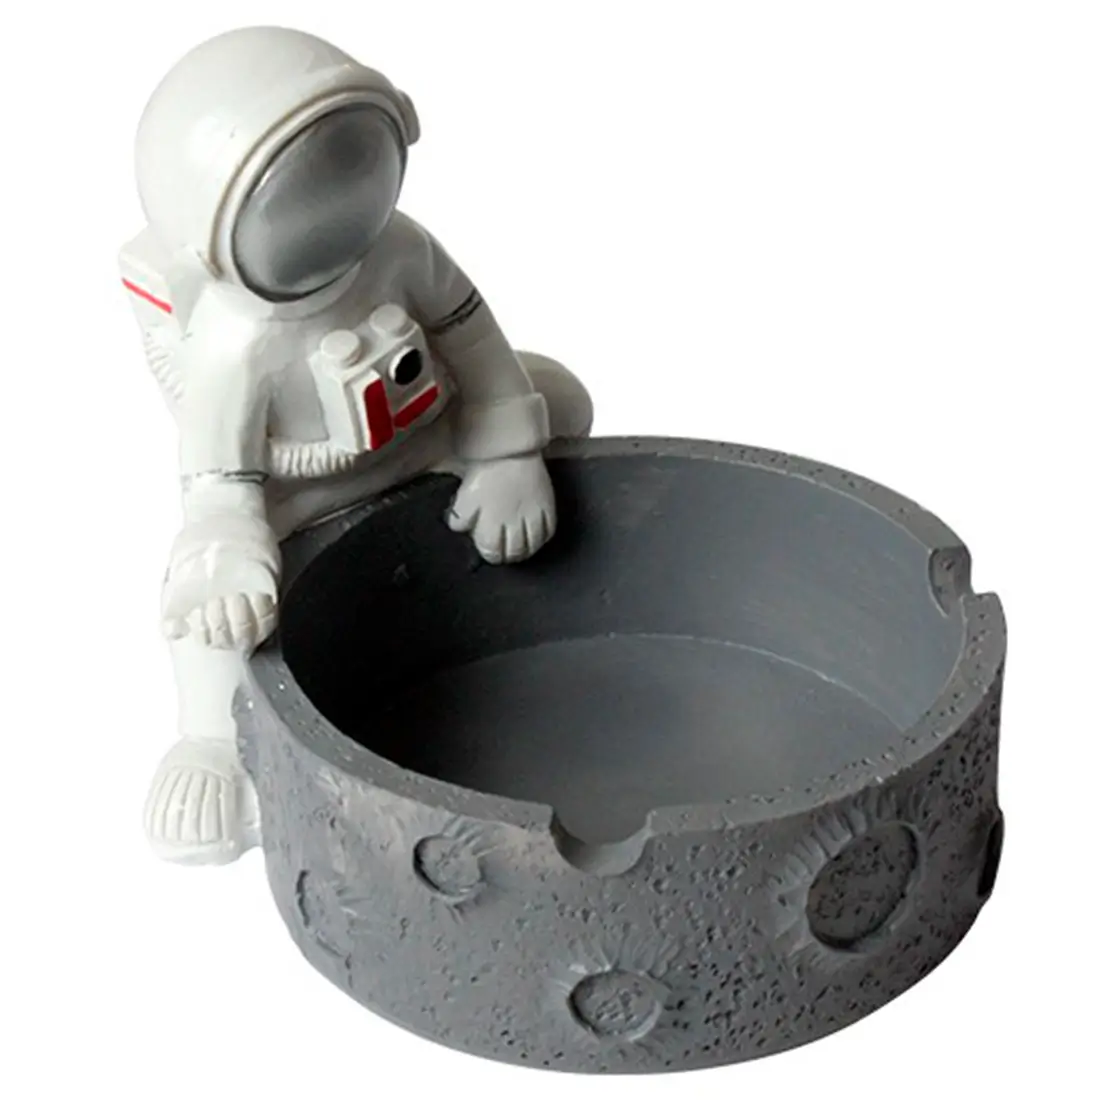 ASHtronaut - Spaceman Ashtray